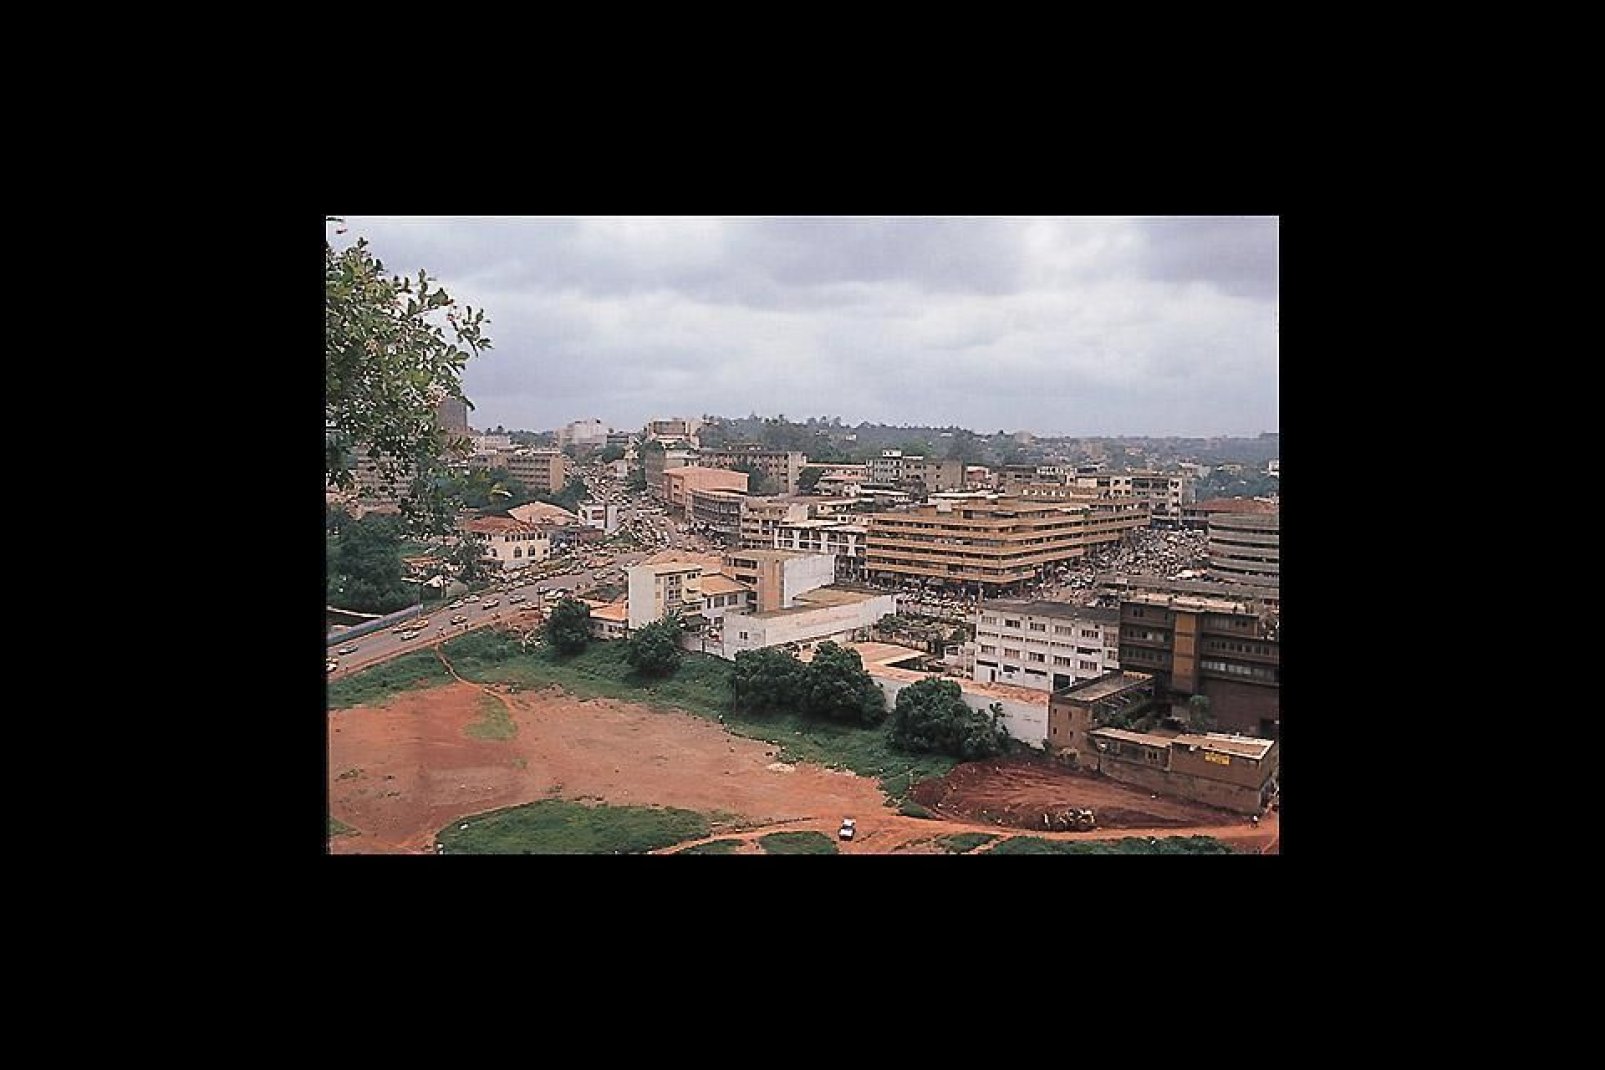 Yaound wird auch die "Stadt der sieben Hgel" genannt. Hier befinden sich die wichtigsten Institutionen des Landes.